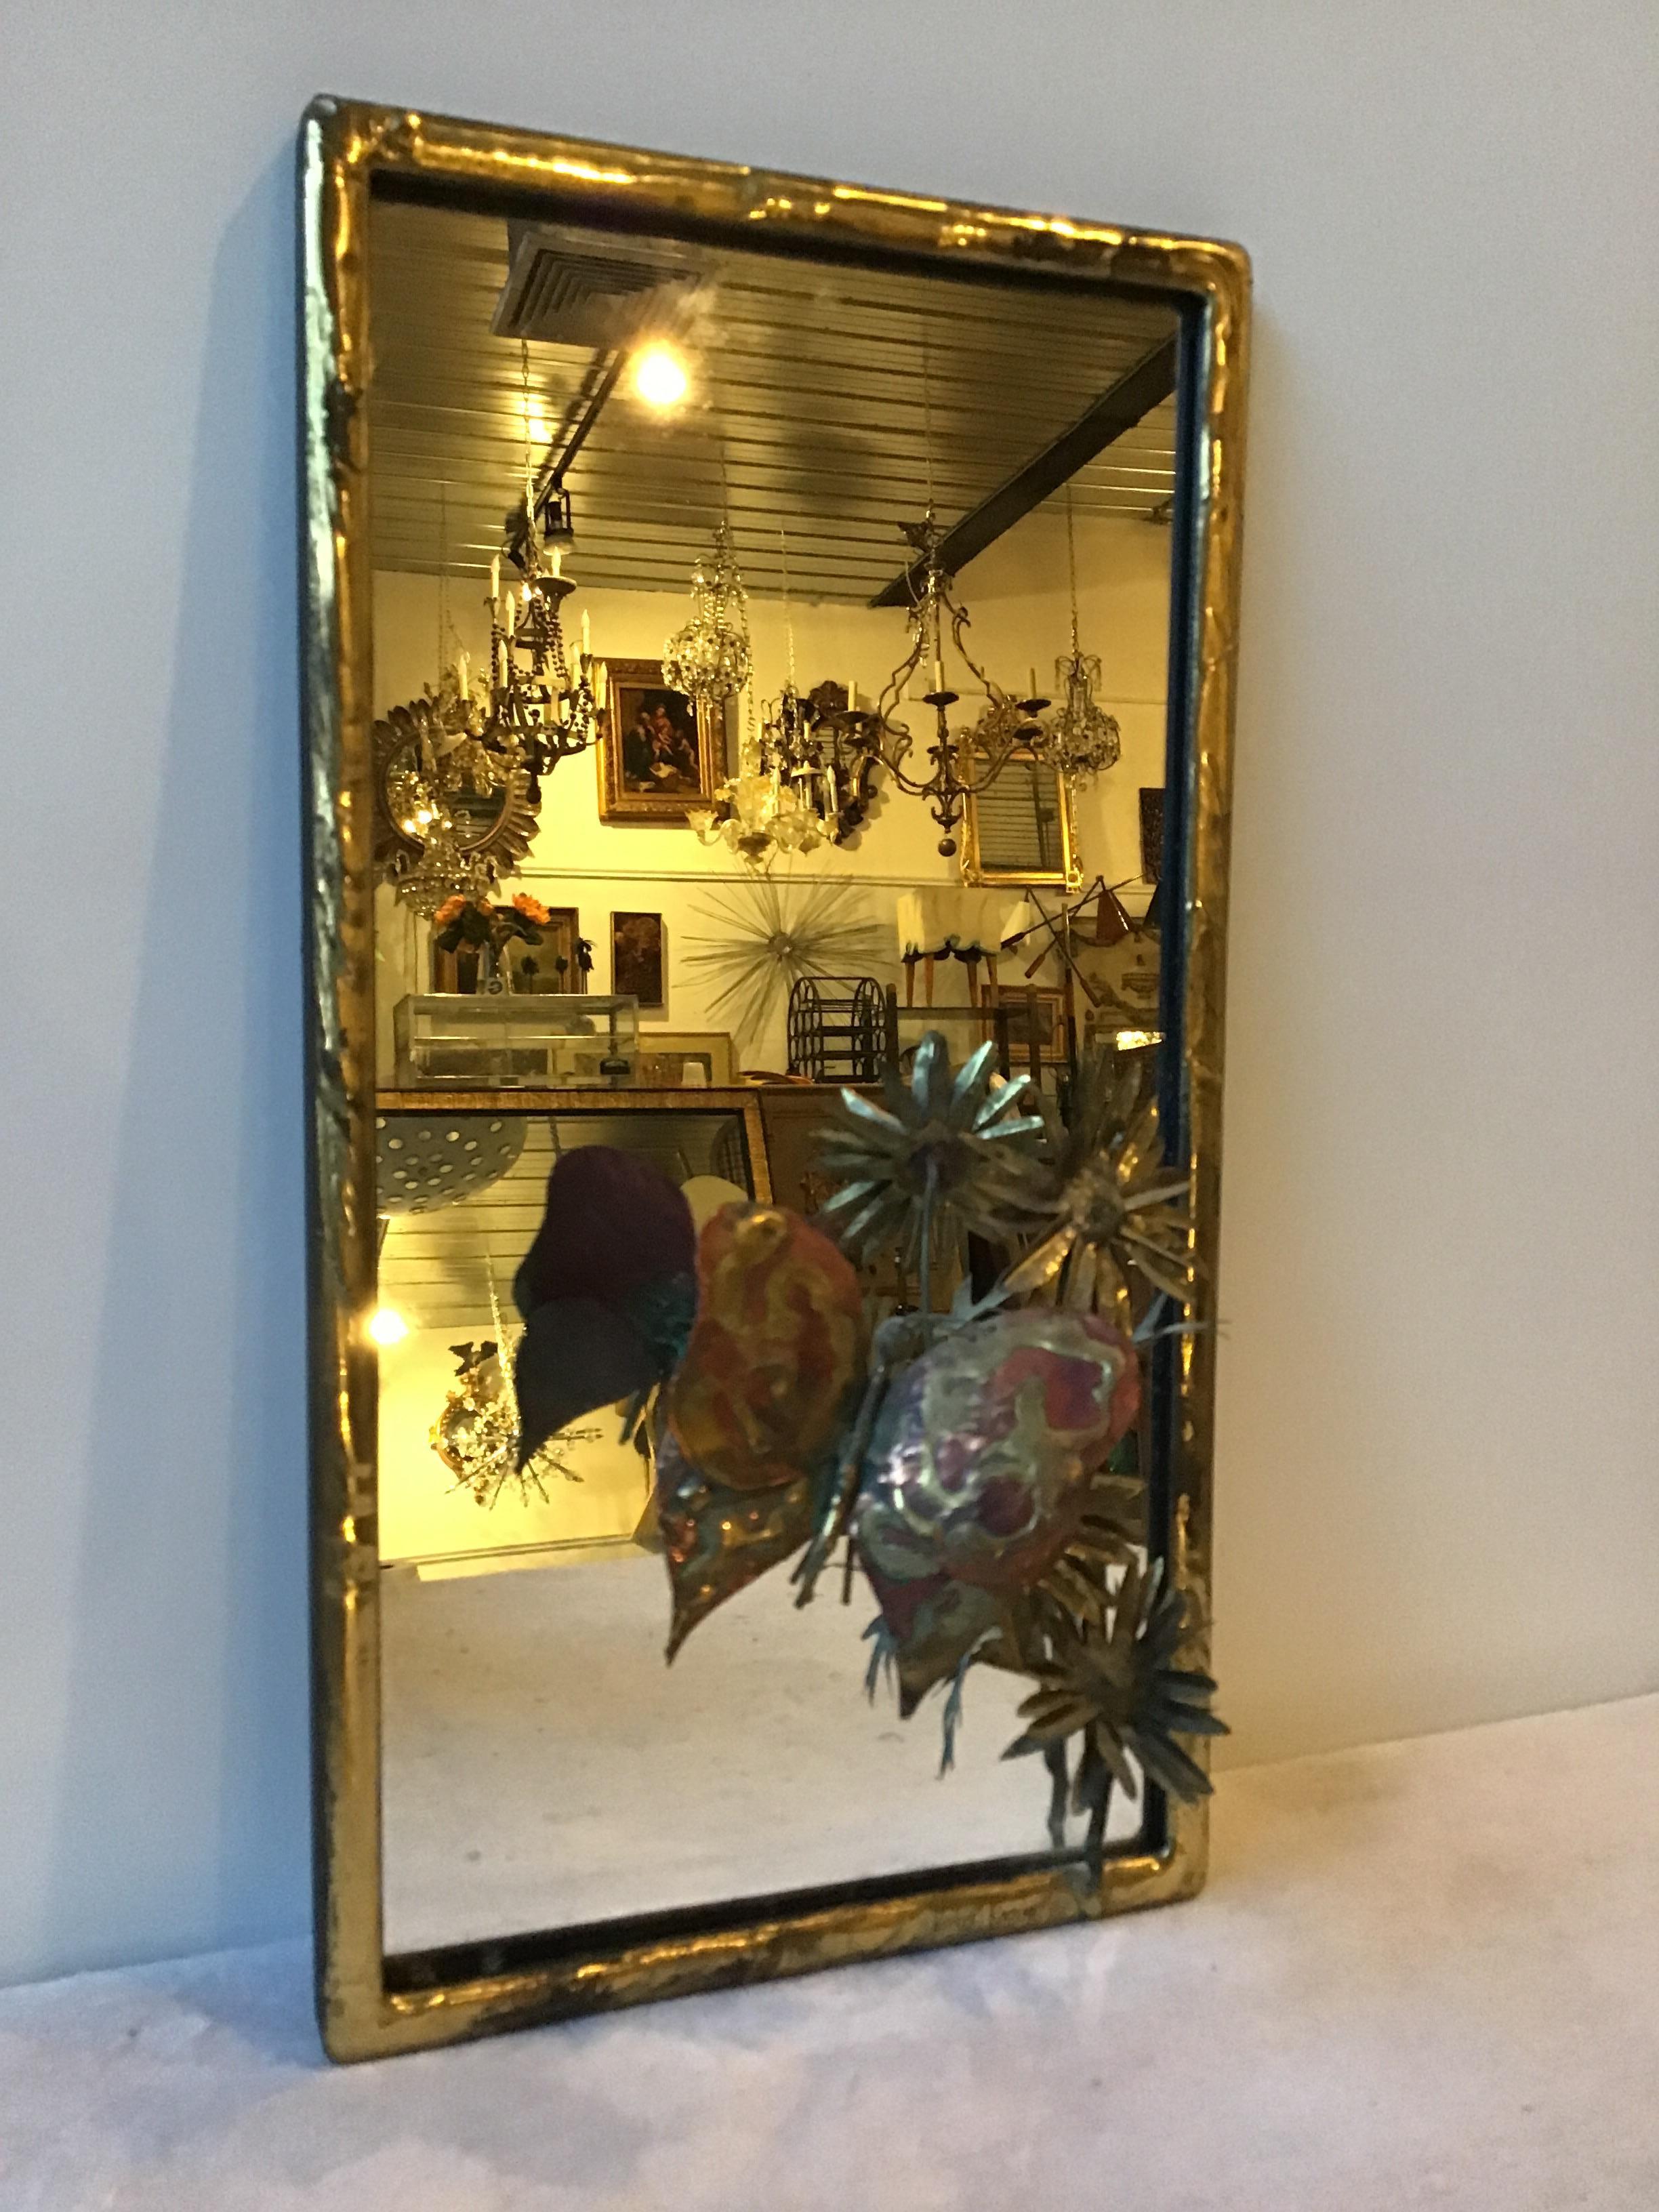 miroir en laiton des années 1970 avec sculpture de papillons et de fleurs .
Signé Nober Roosnr.